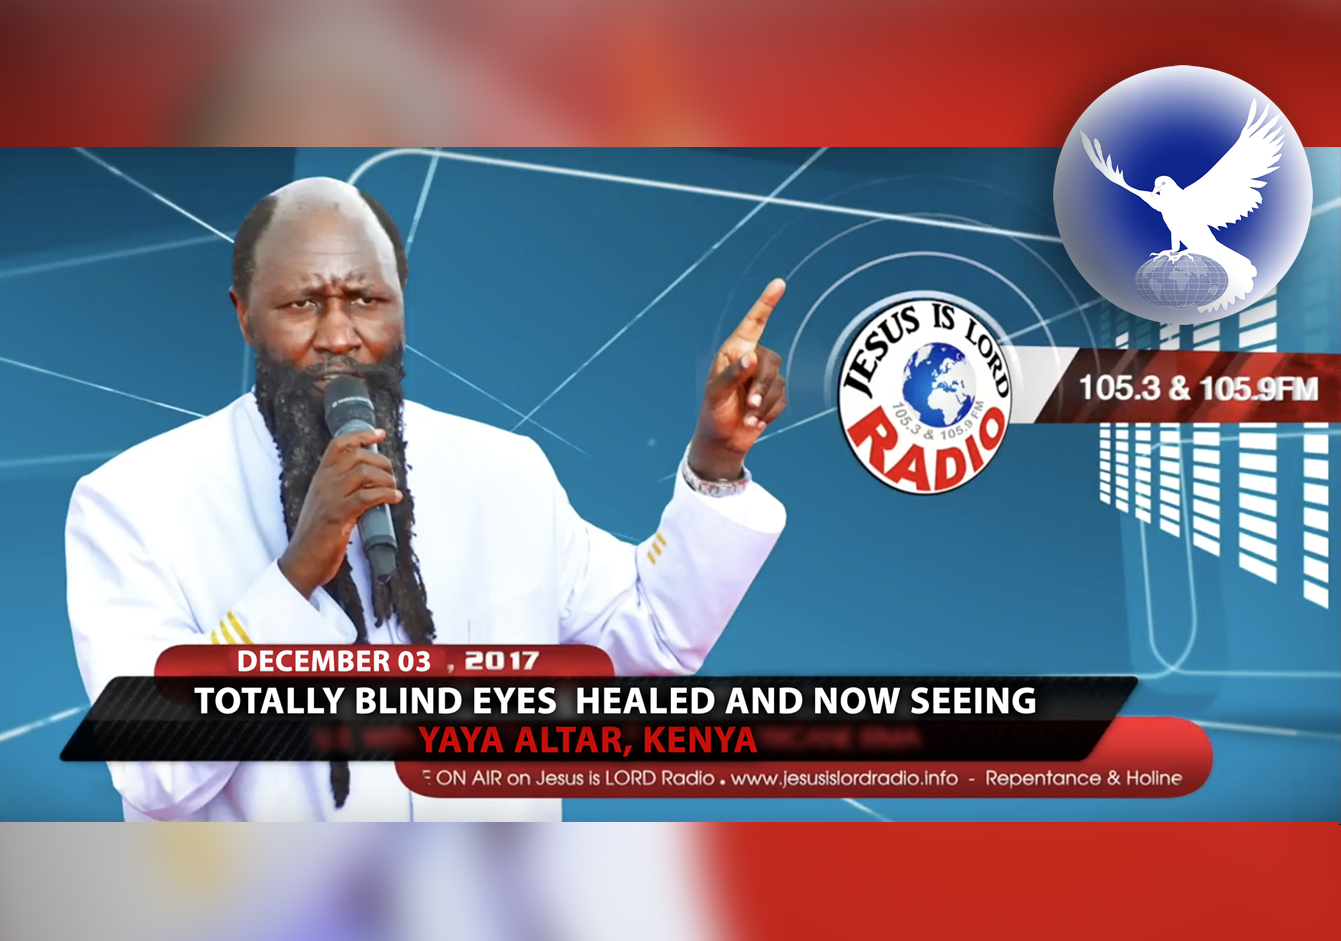 EPISODE 56 - Blind Eyes Opened In Yaya Altar (03Nov2017) - Prophet Dr. Owuor